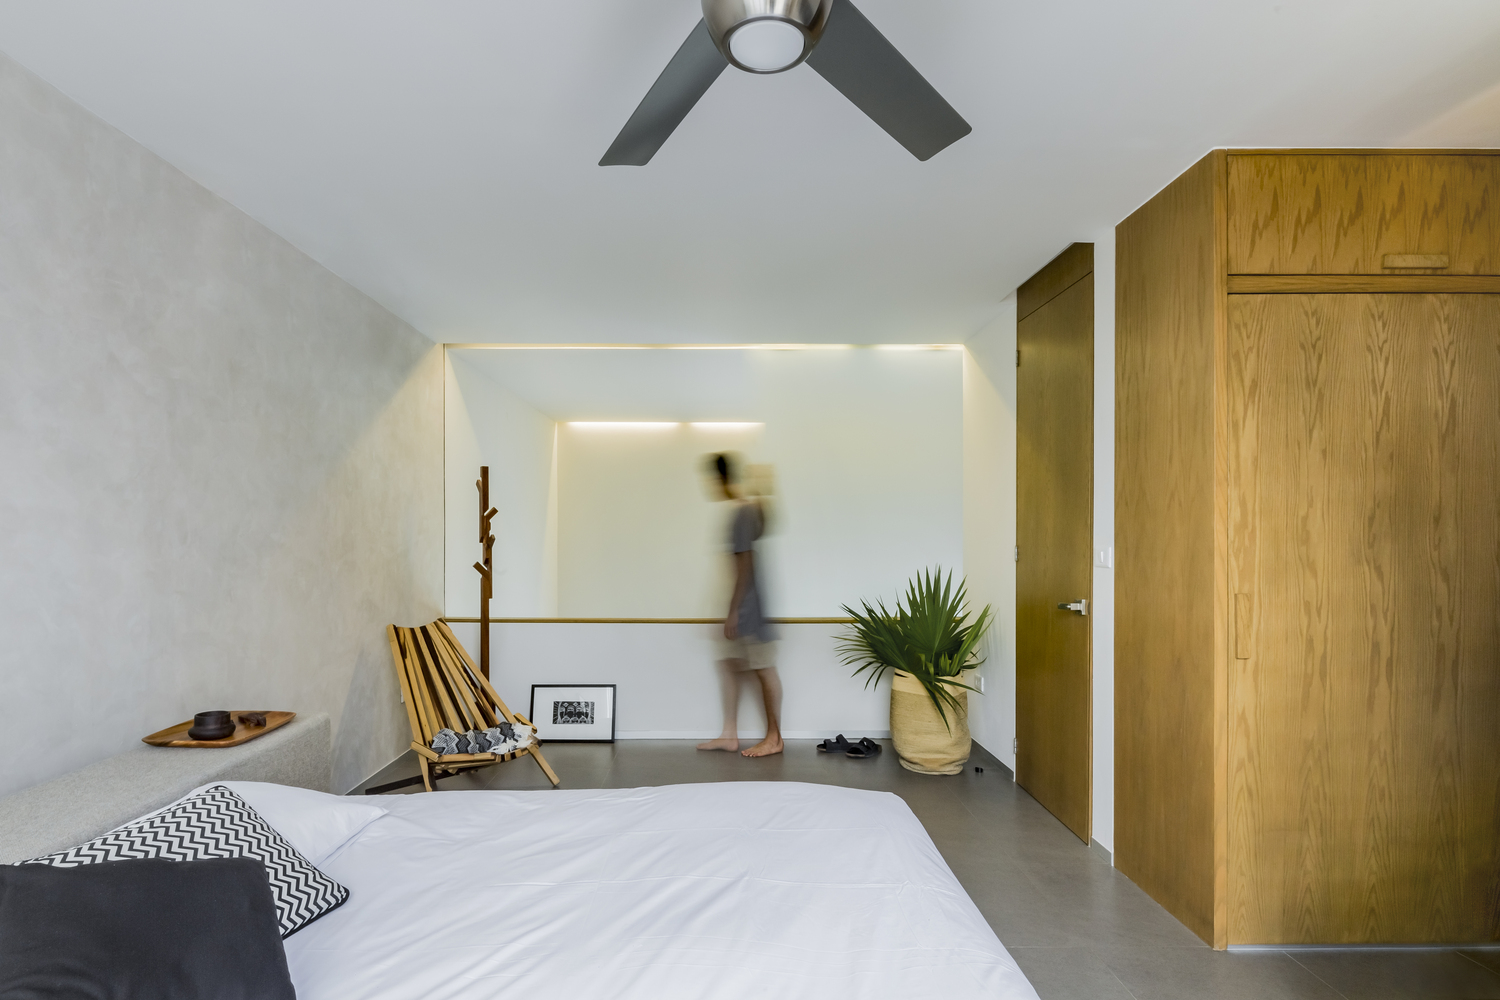 Hình ảnh phòng ngủ có thiết kế đơn giản với ga gối màu trắng, tủ gỗ cao kịch trần, chậu cây lớn đặt ở góc phòng